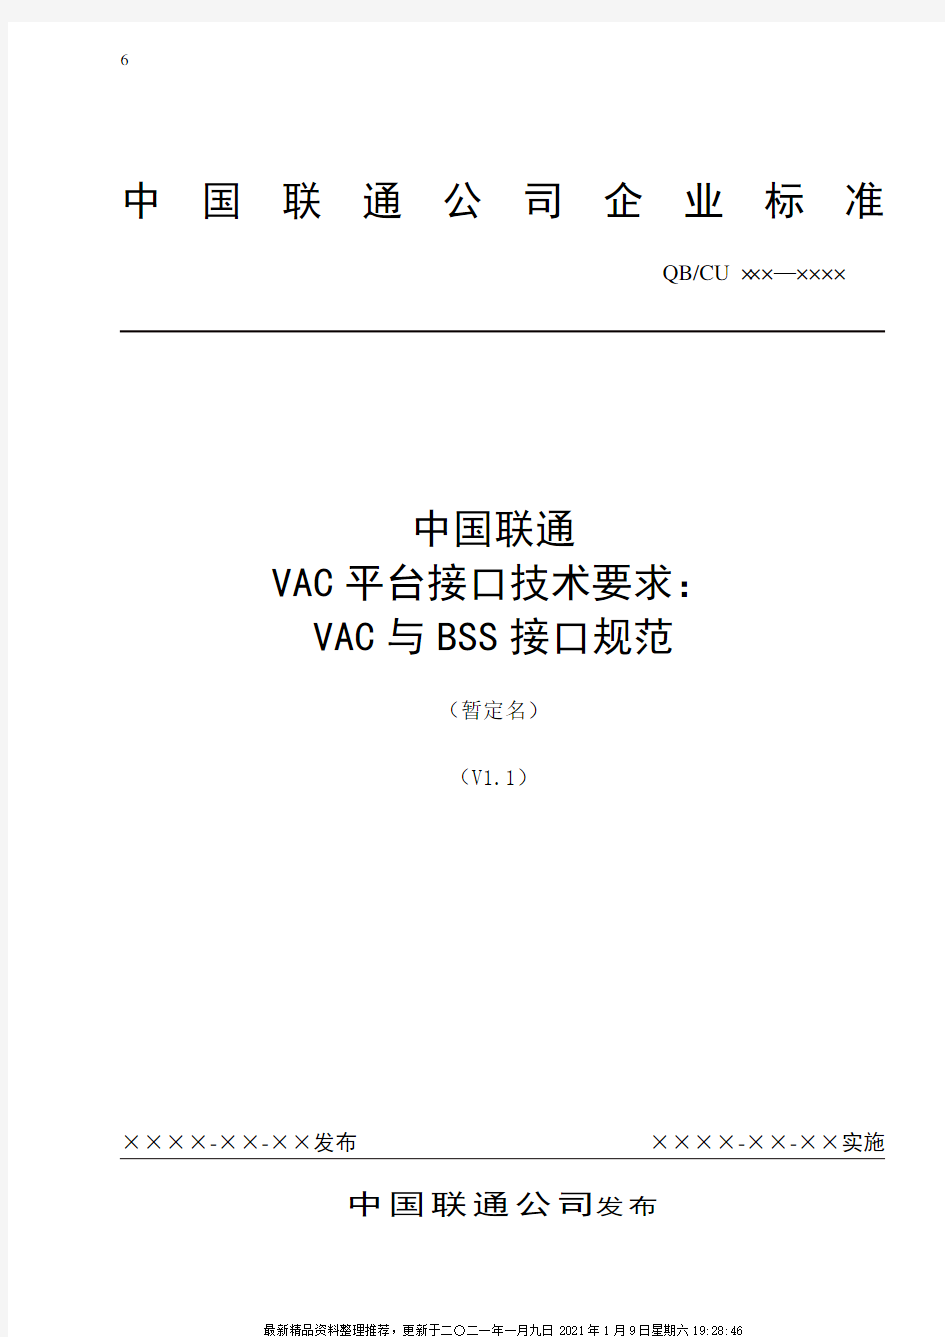 中国联通增值业务鉴权中心接口规范-VAC与BSS接口规范-0